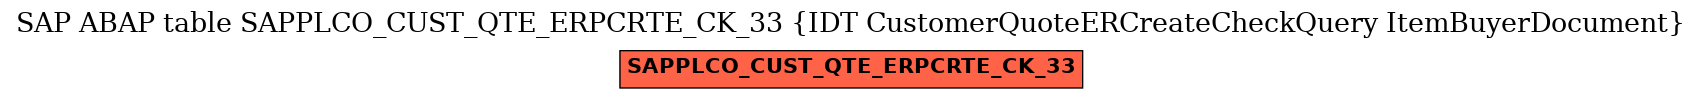 E-R Diagram for table SAPPLCO_CUST_QTE_ERPCRTE_CK_33 (IDT CustomerQuoteERCreateCheckQuery ItemBuyerDocument)